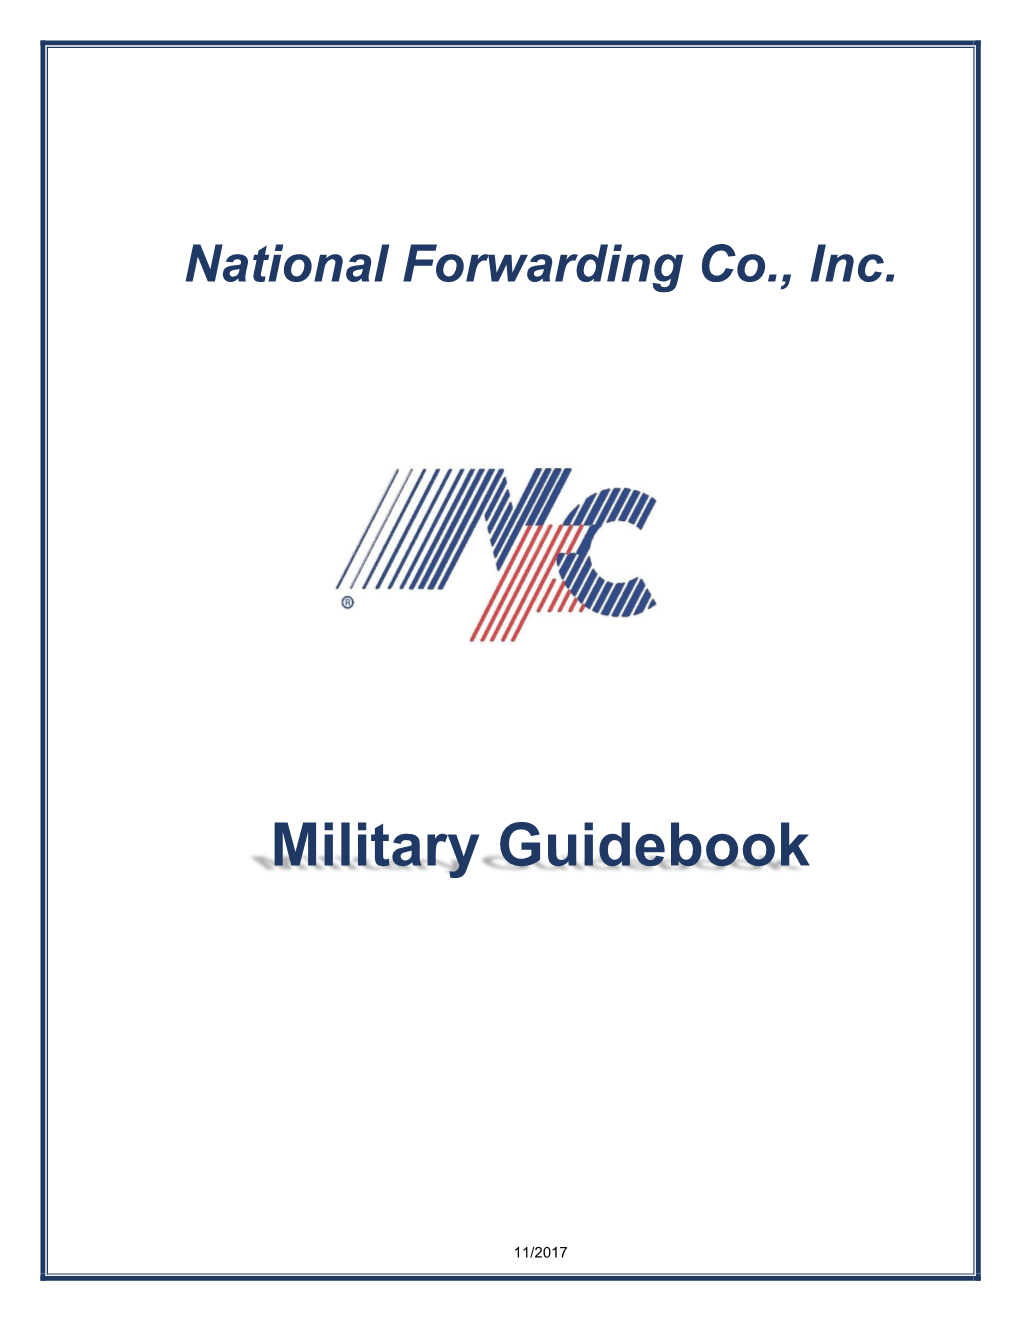 Military Guidebook